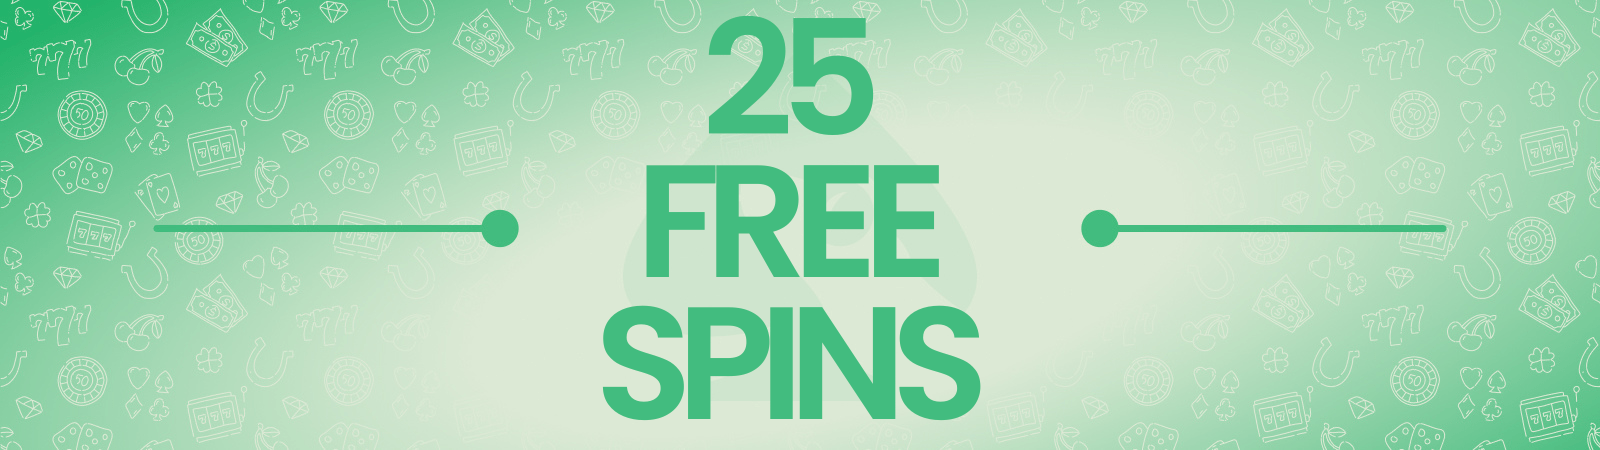 25 Free Spins on Registration No Deposit UK